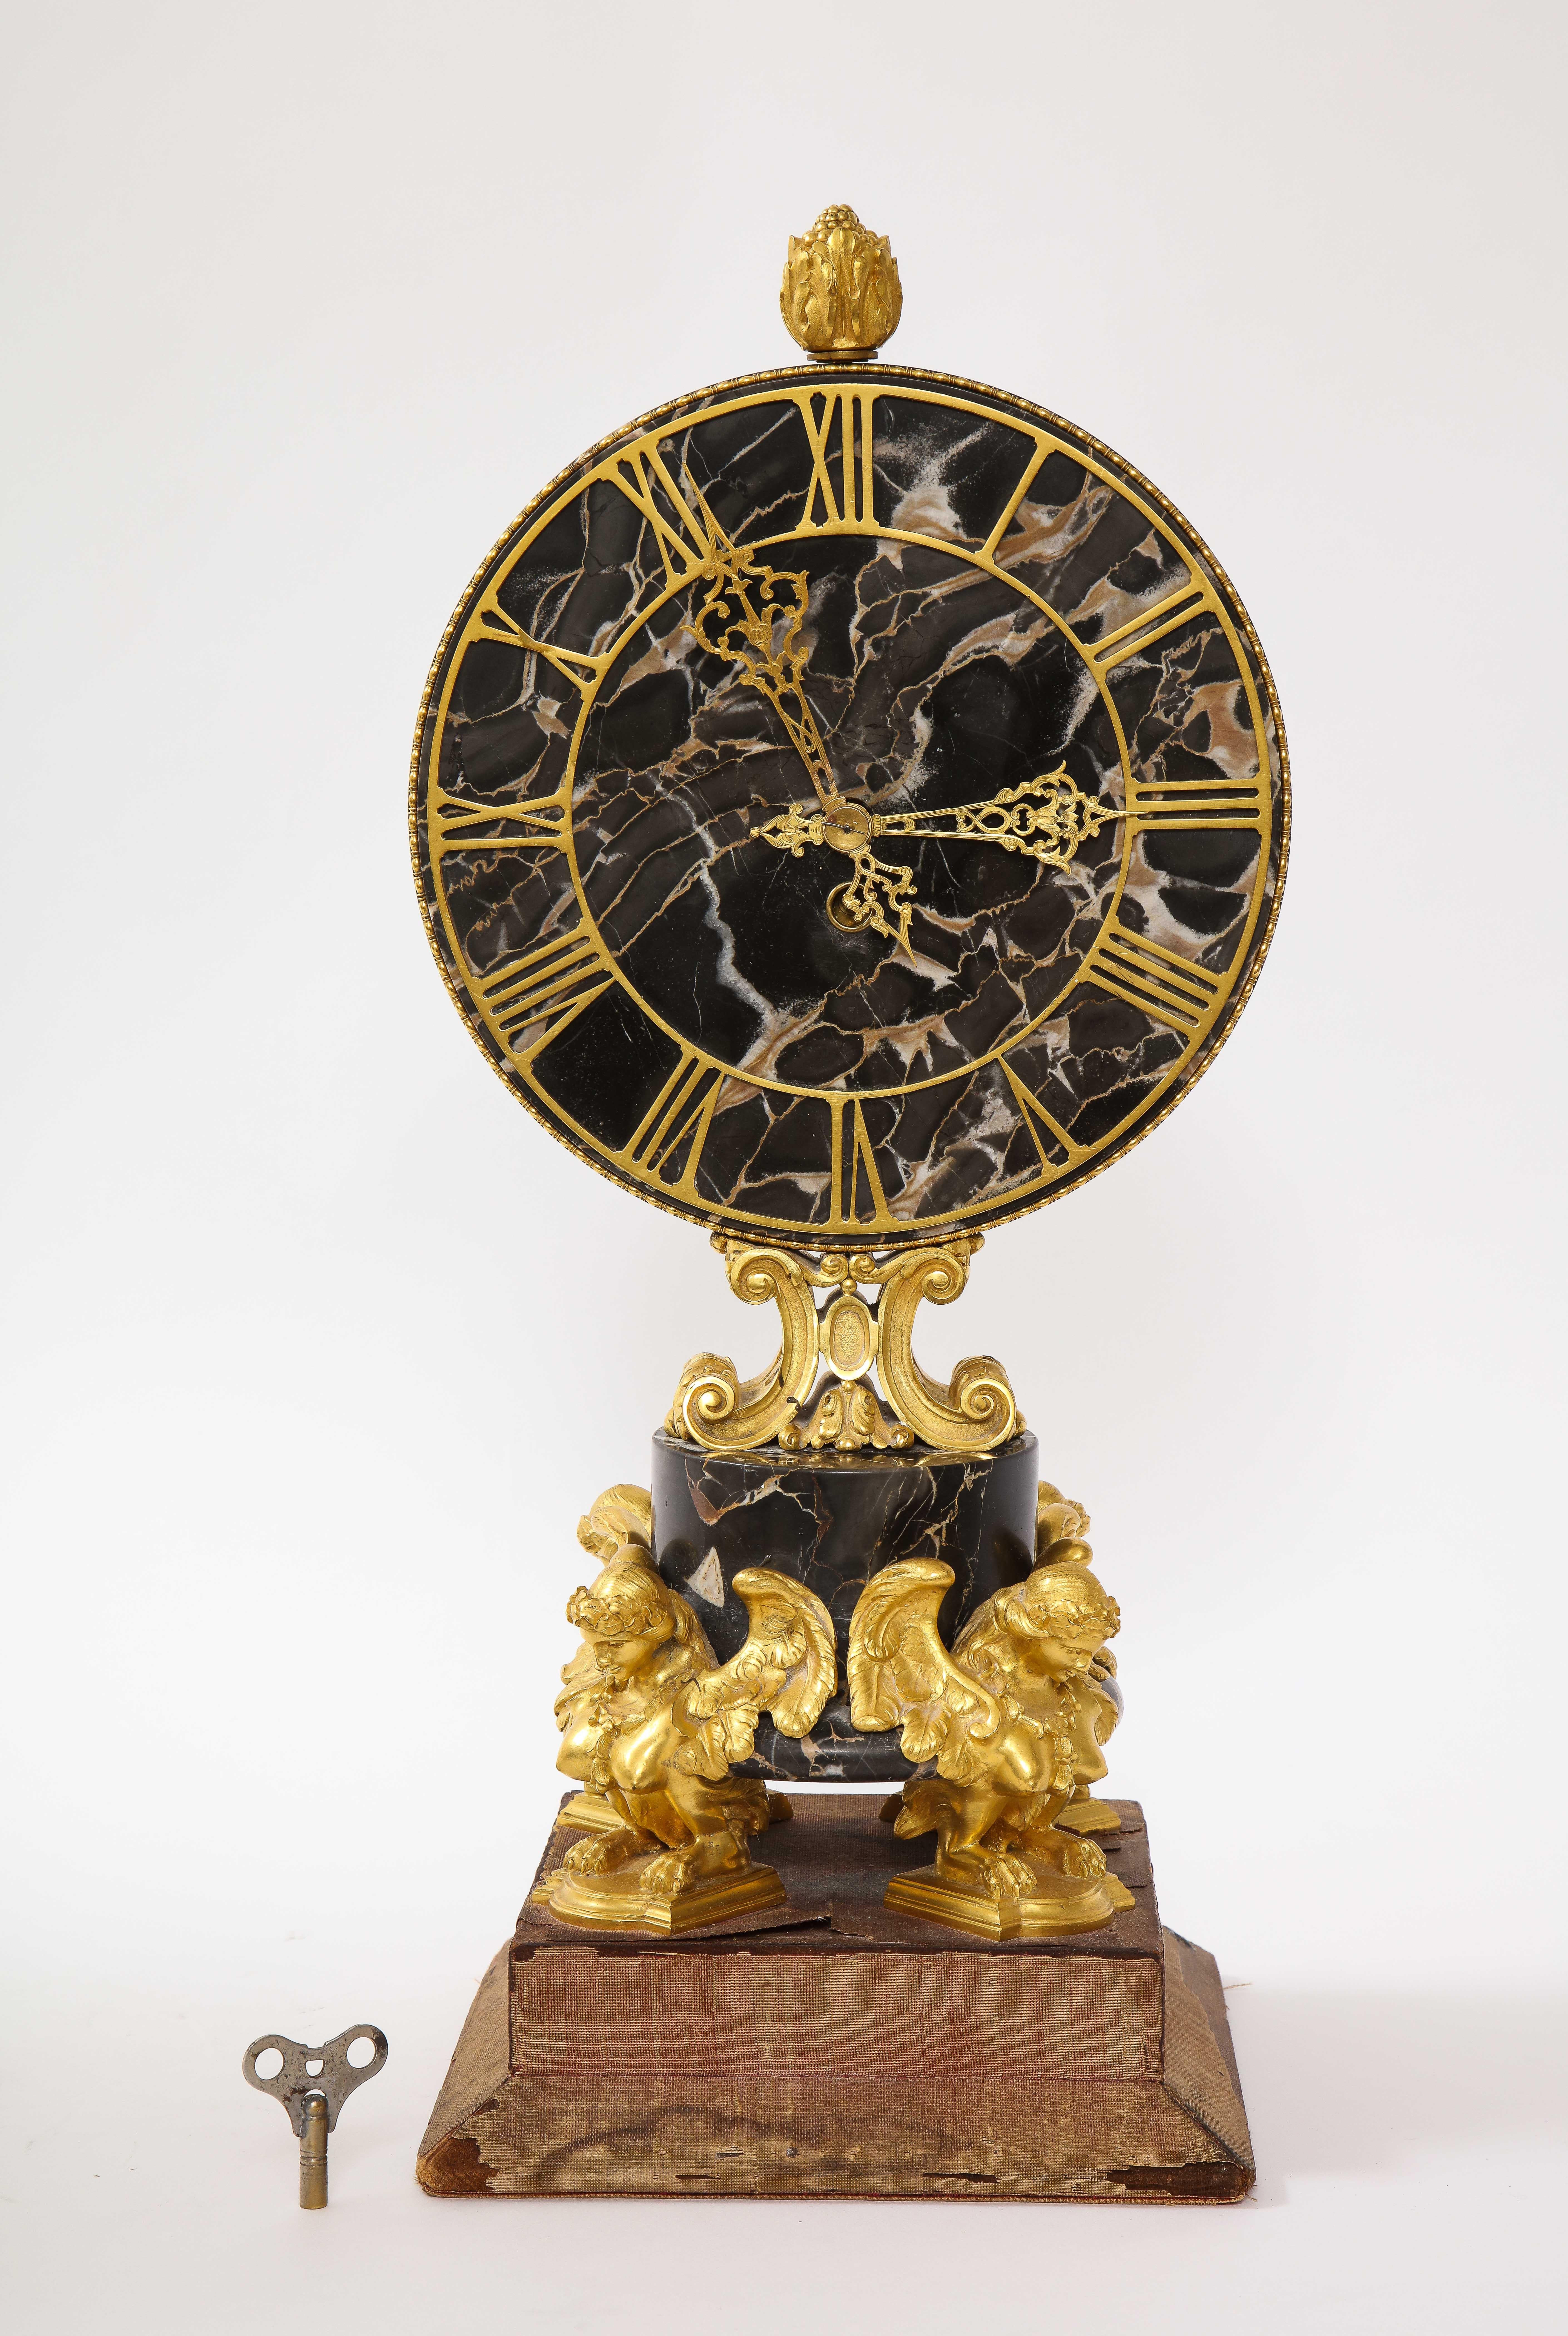 Ein wunderschönes und großes E.F. Caldwell schwarz geädertem Marmor und dore Bronze montiert sphinxbeinigen Uhr. Dies ist eine schöne Manteluhr, die von dem großen E.F. Caldwell und Co. Das Gesicht und der Mittelteil sind aus wunderschönem,